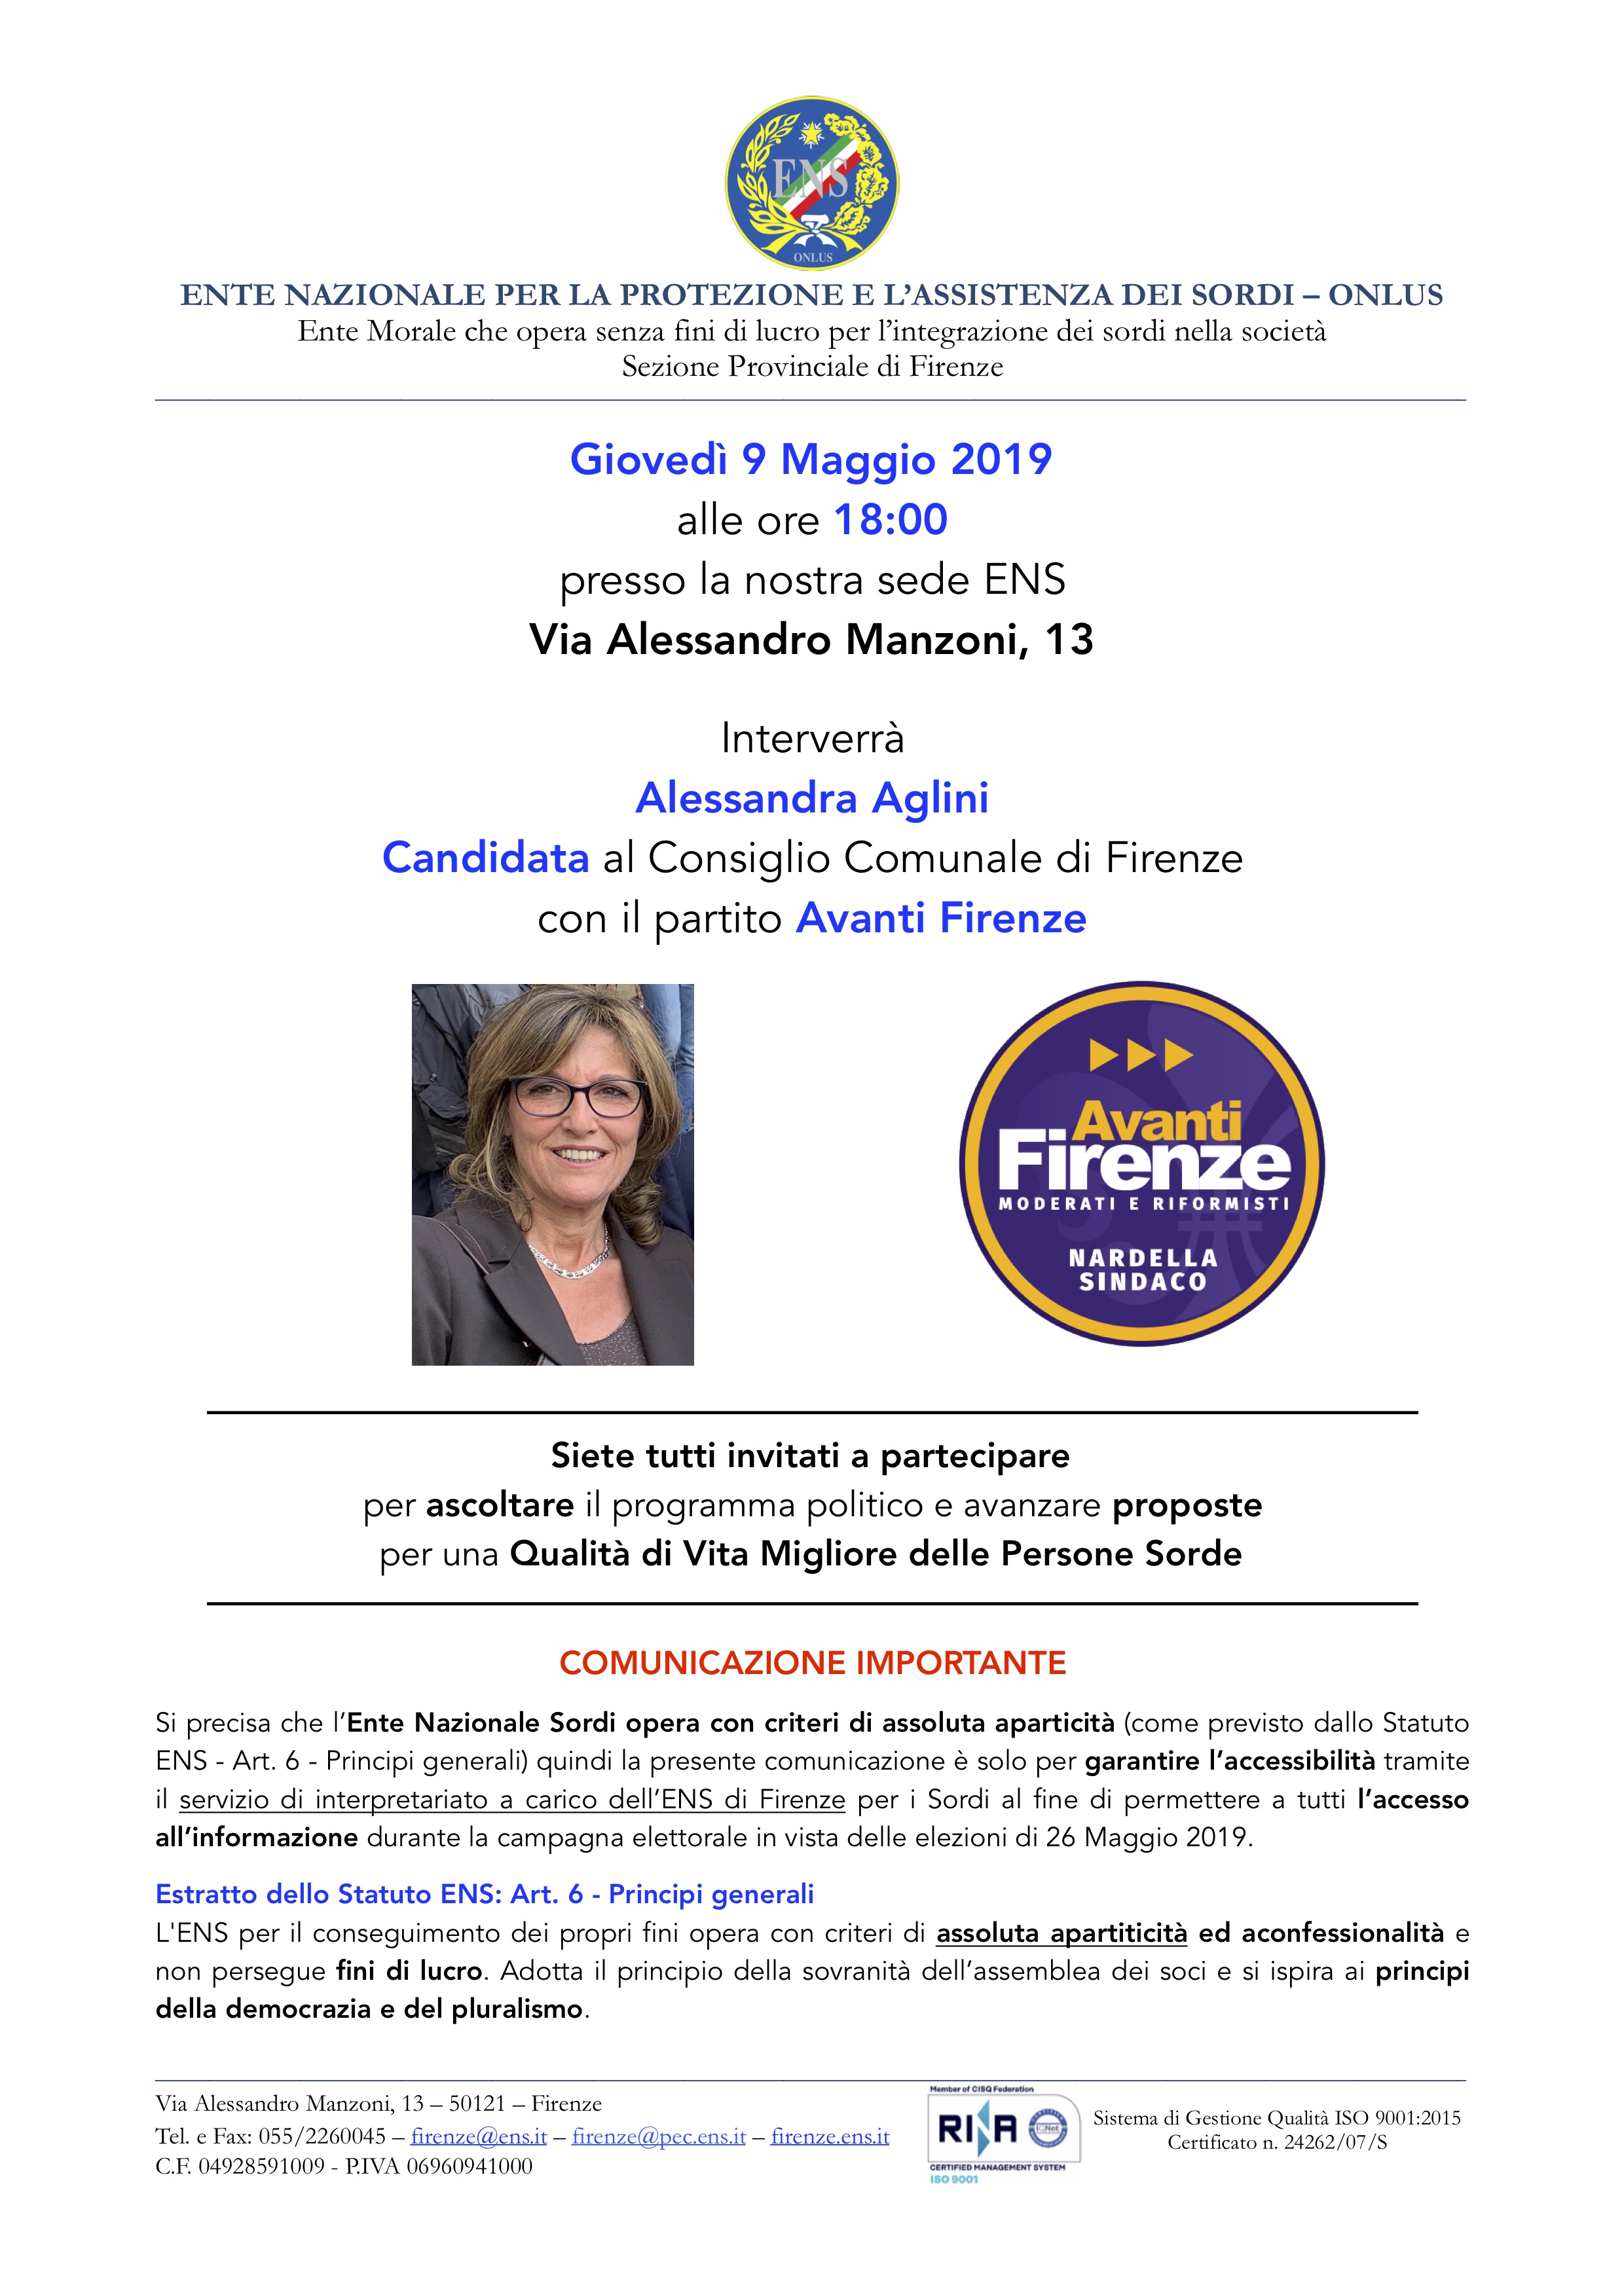 Comunicato per campagna elettorale 26 Maggio 2019 Aglini Alessandra 9 Maggio 2019